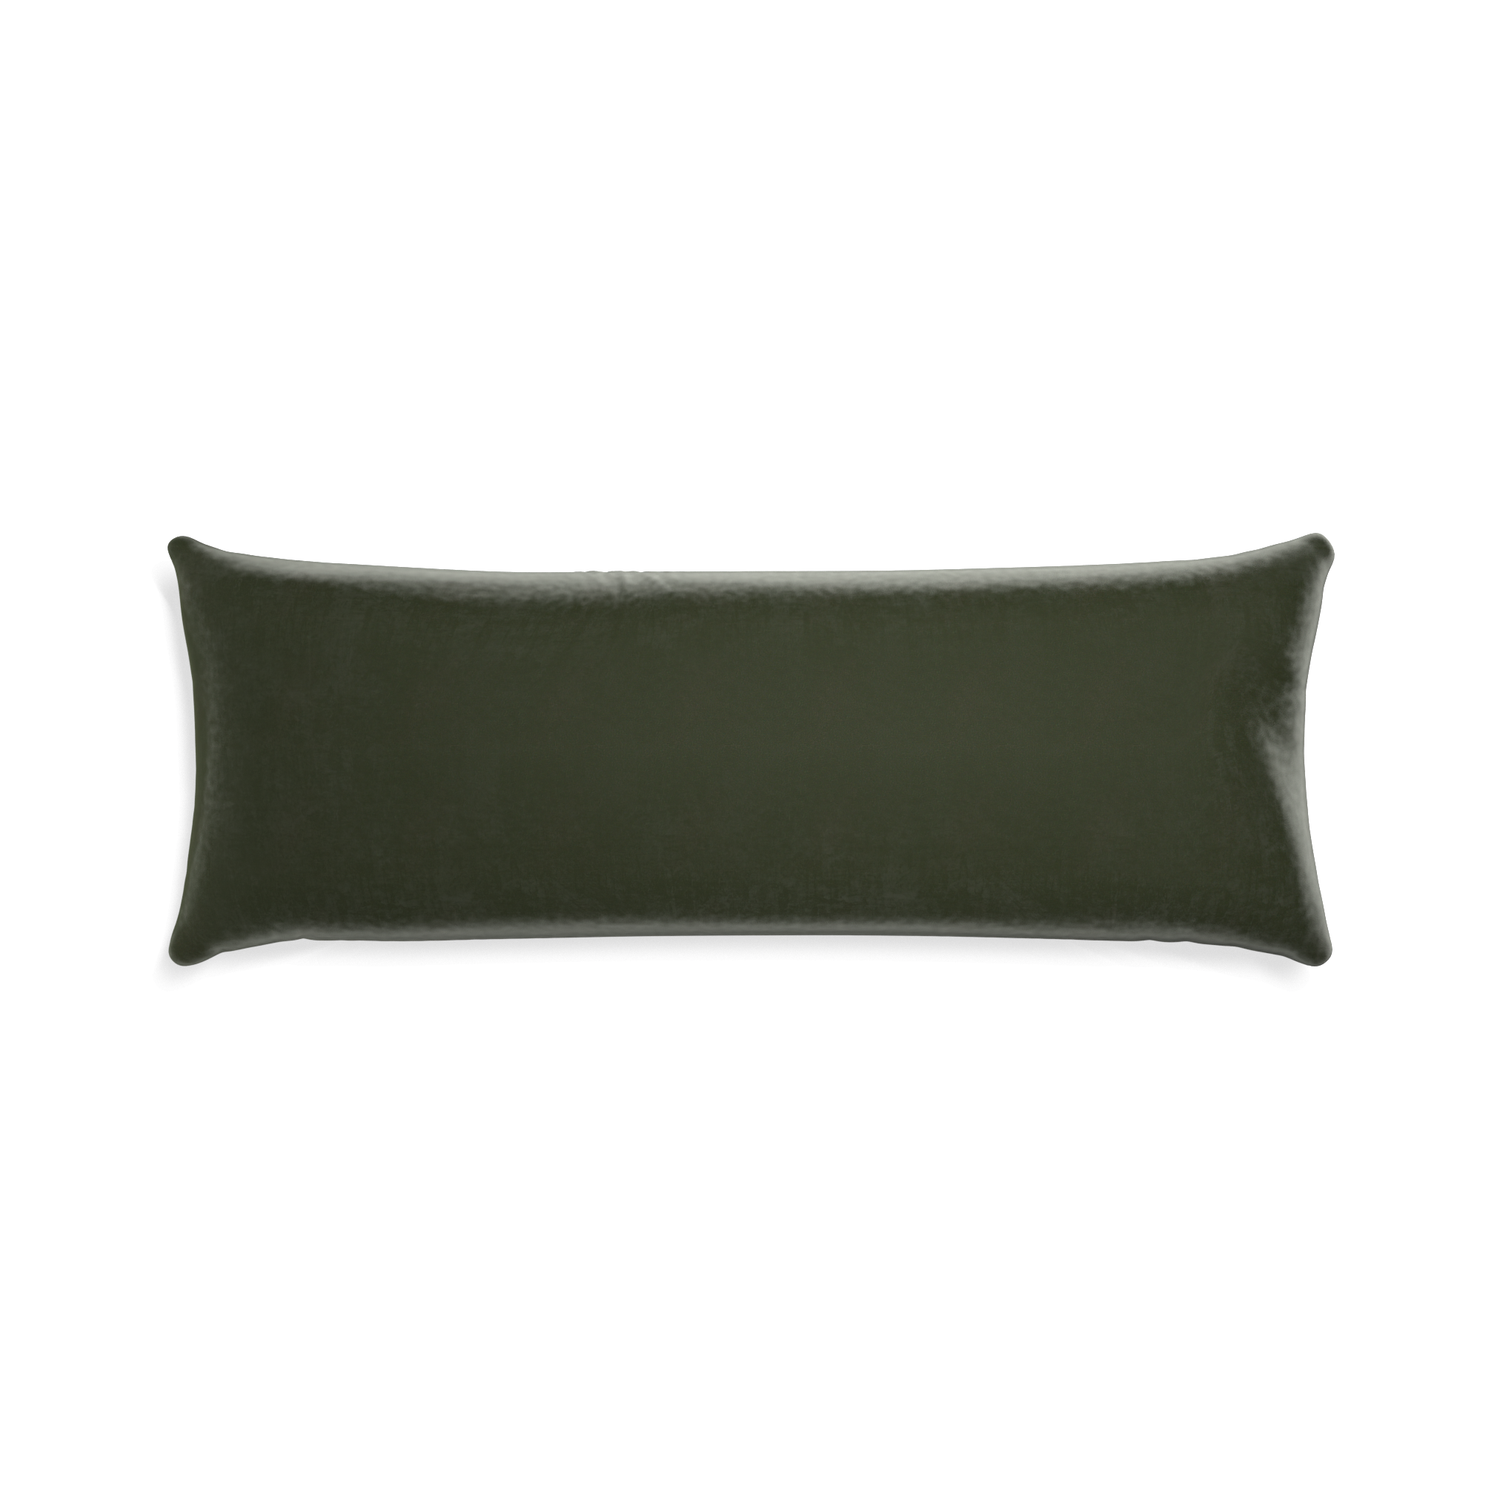 rectangle fern green velvet pillow 